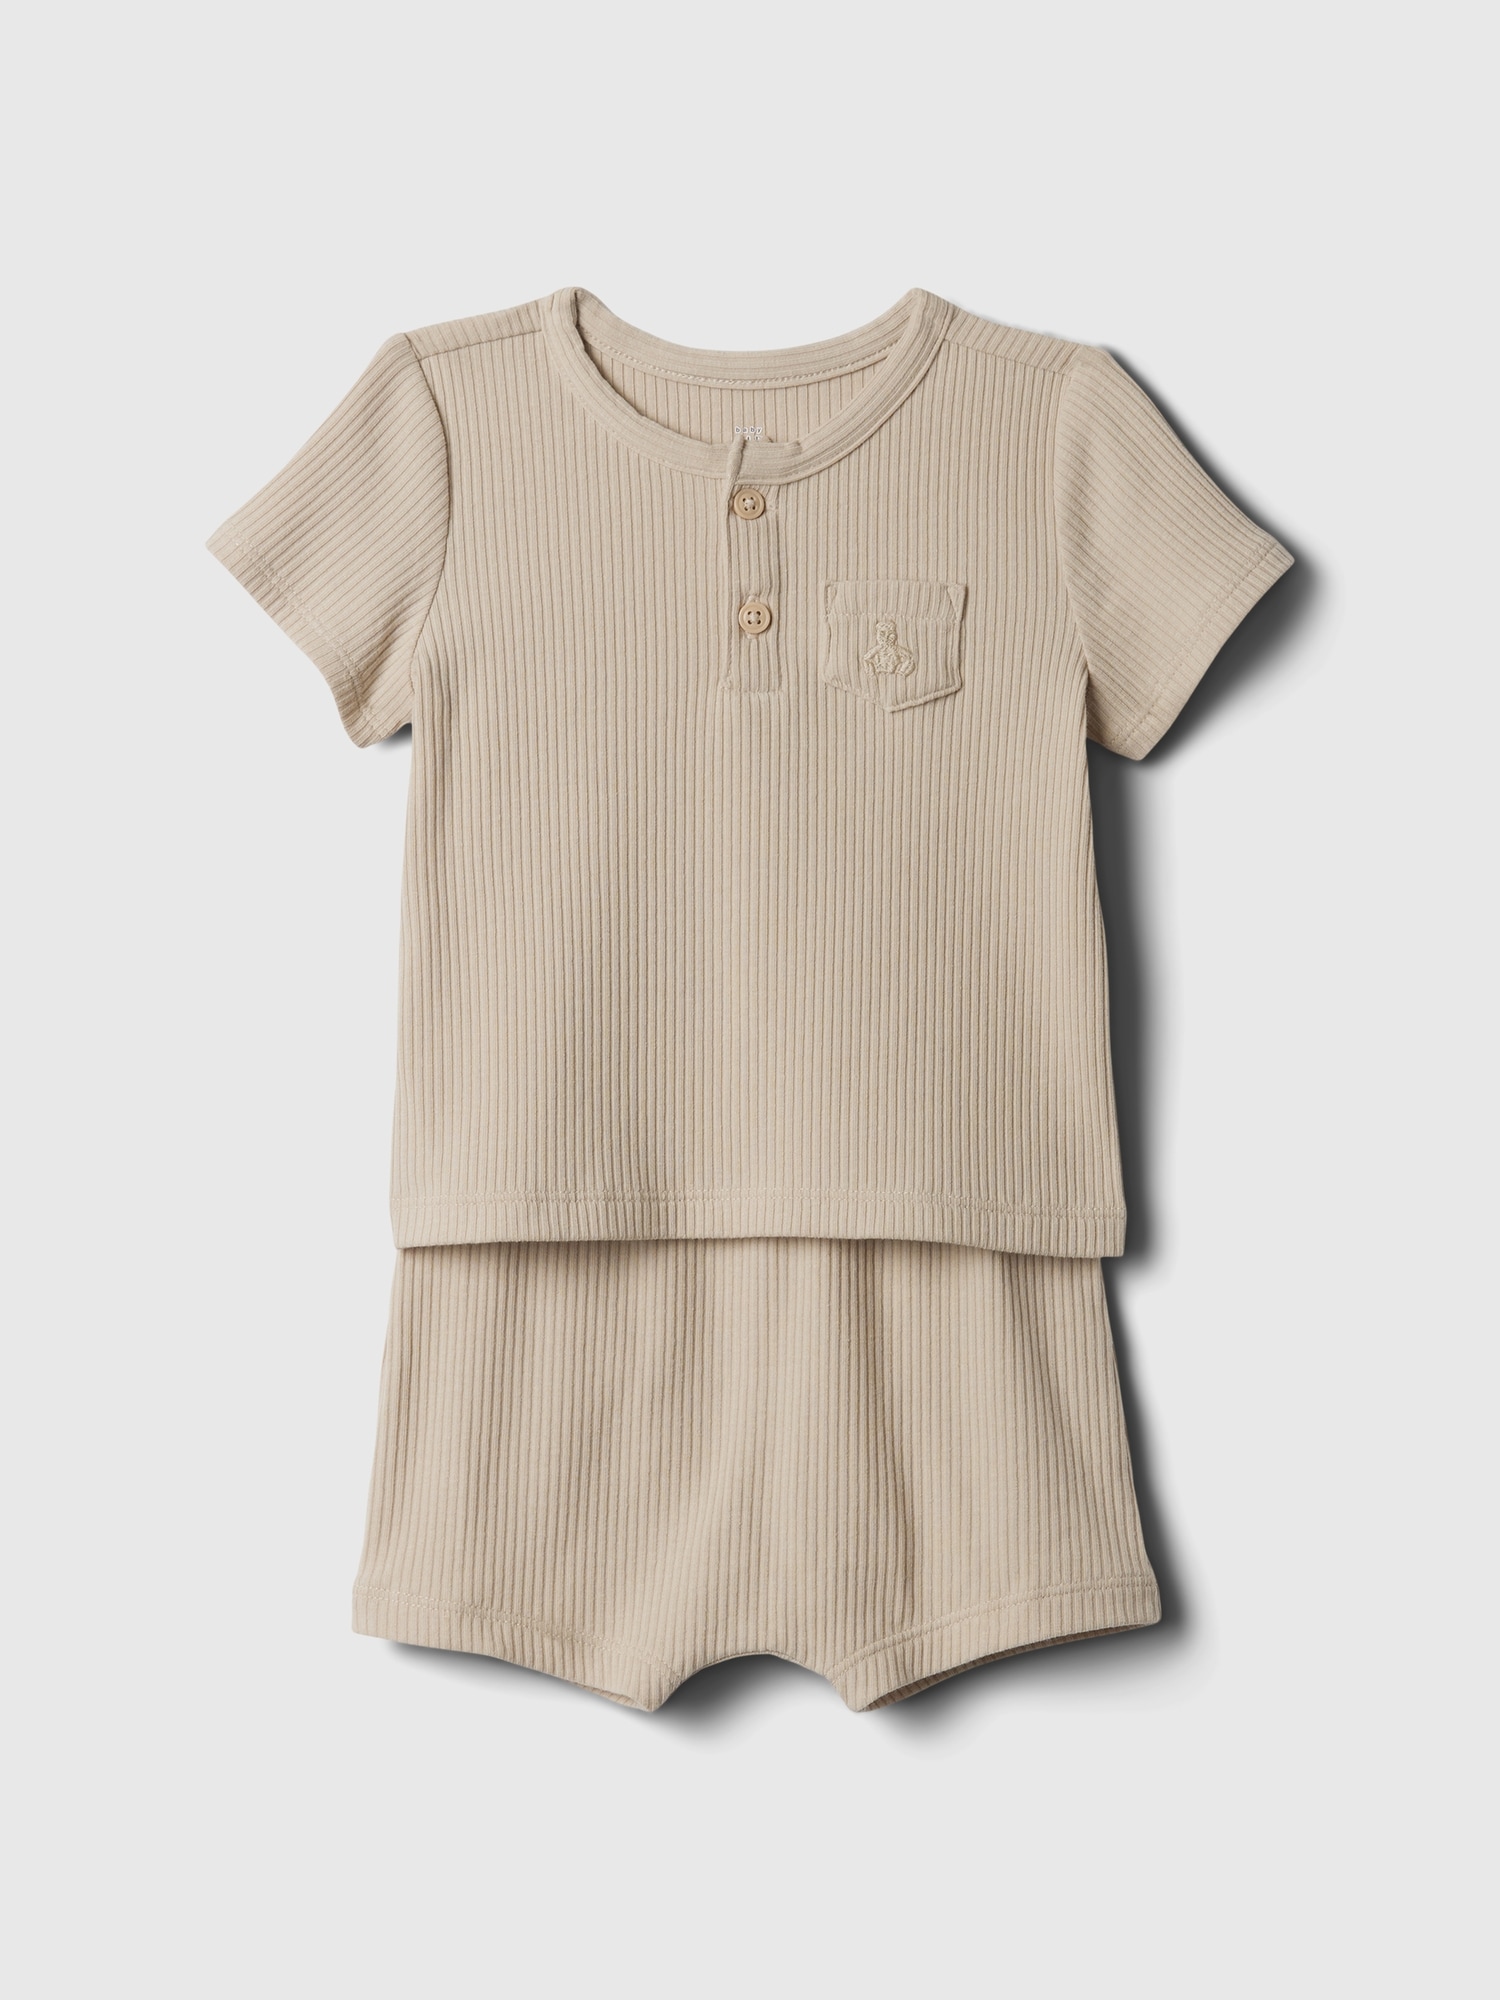 갭 Baby Rib Outfit Set